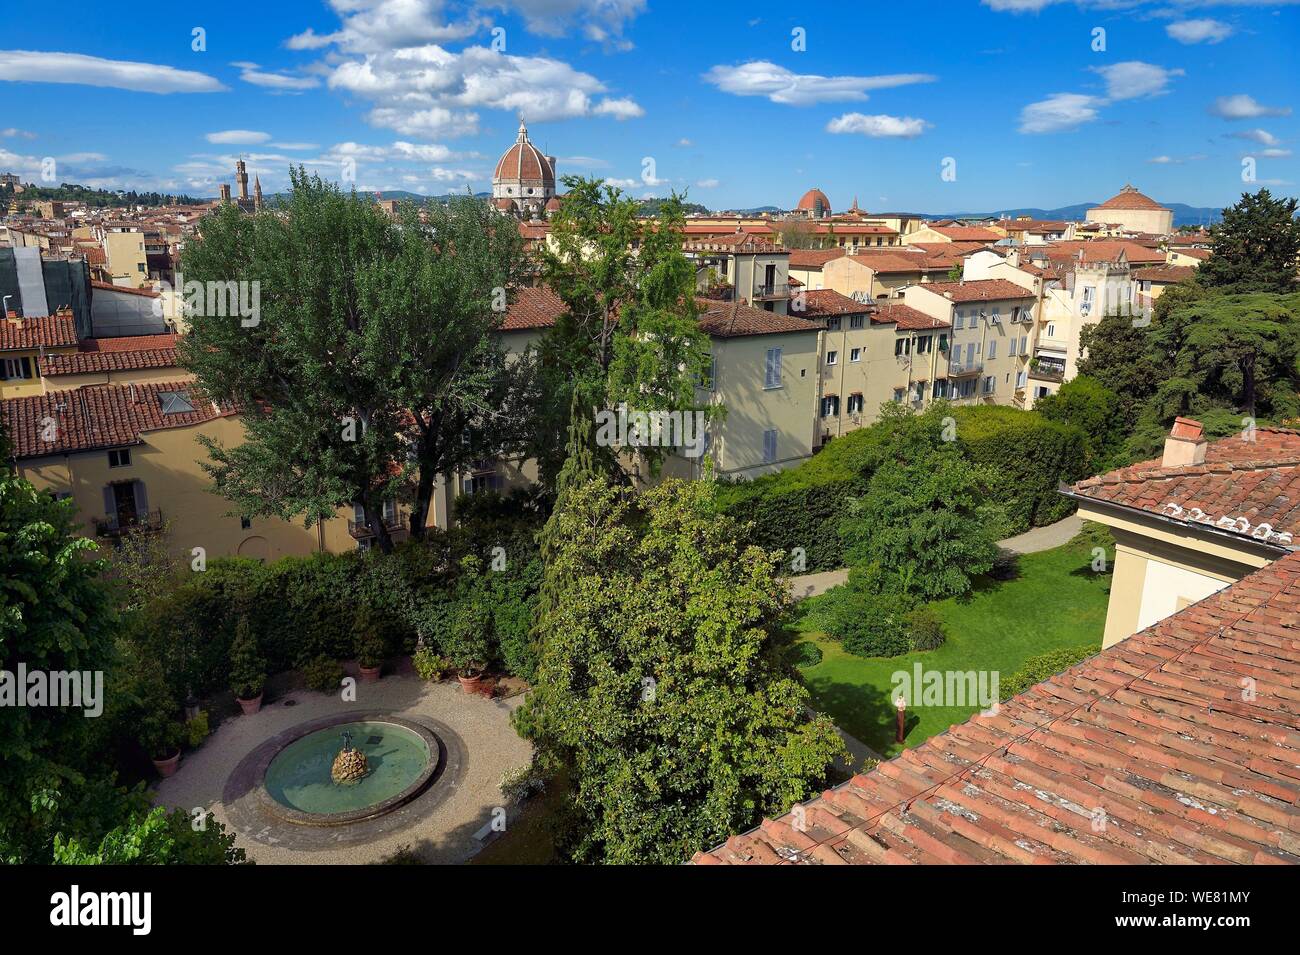 Italien, Toskana, Florenz, ein UNESCO Weltkulturerbe, Blick auf die Altstadt von der Palazzo della Gherardesca, 5 Sterne palace Four Seasons Hotel Firenze Stockfoto